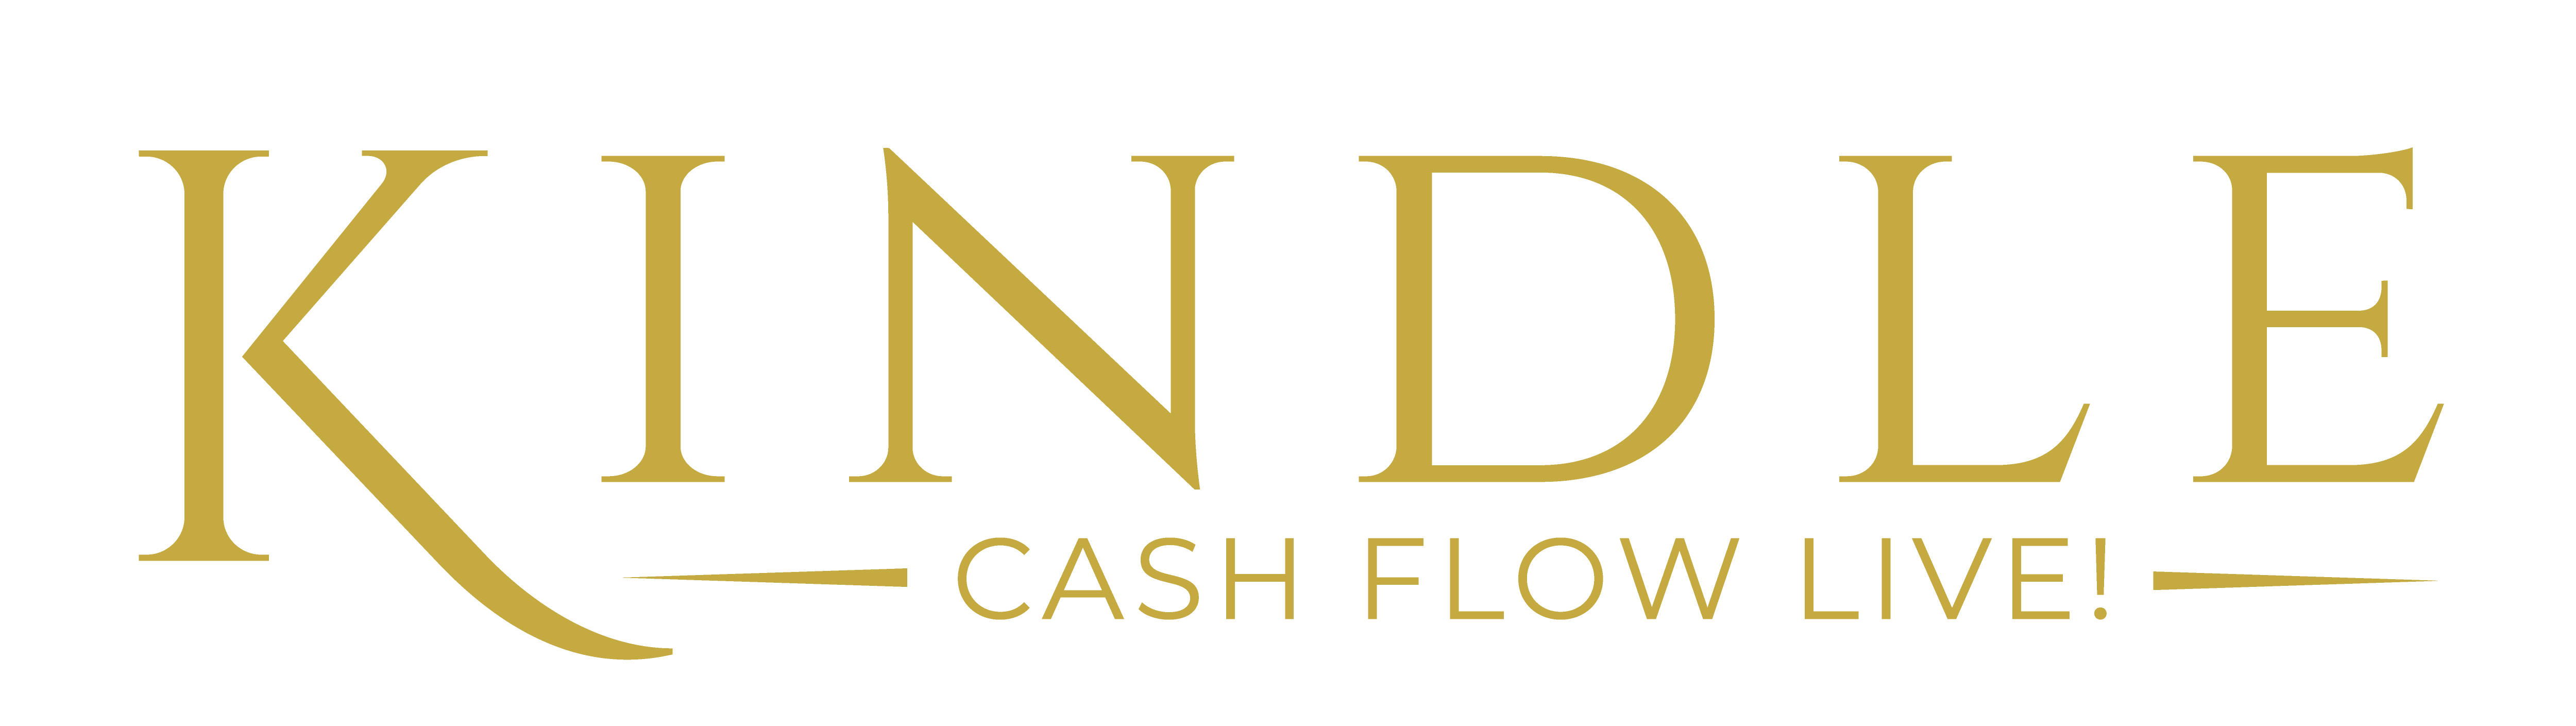 kindle cash flow live